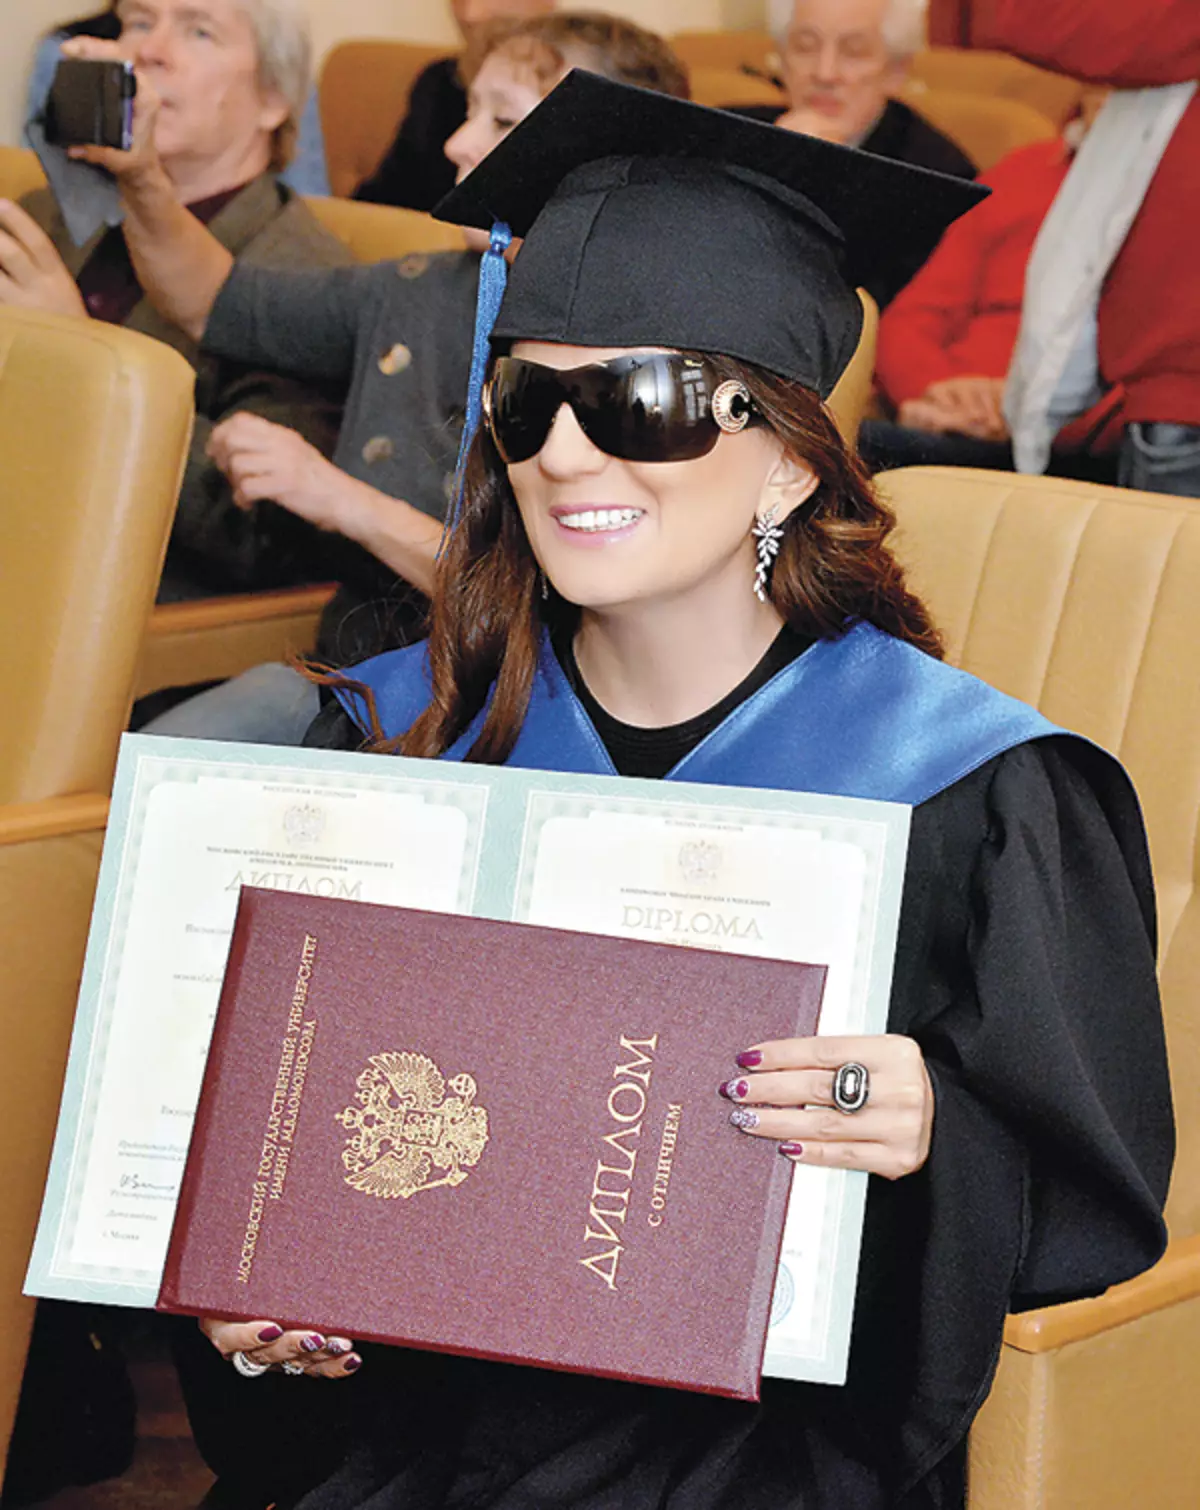 Диана боловсрол эзэмшихэд маш их анхаарал хандуулдаг. Тэрээр Москов муж улсын их сургуулийн дипломтой, бас нэг дуучин Москов муж улсын хүмүүнлэгийн хүмүүнлэгийн хүмүүнлэгийн хувьд нэр хүндтэй профессор болжээ